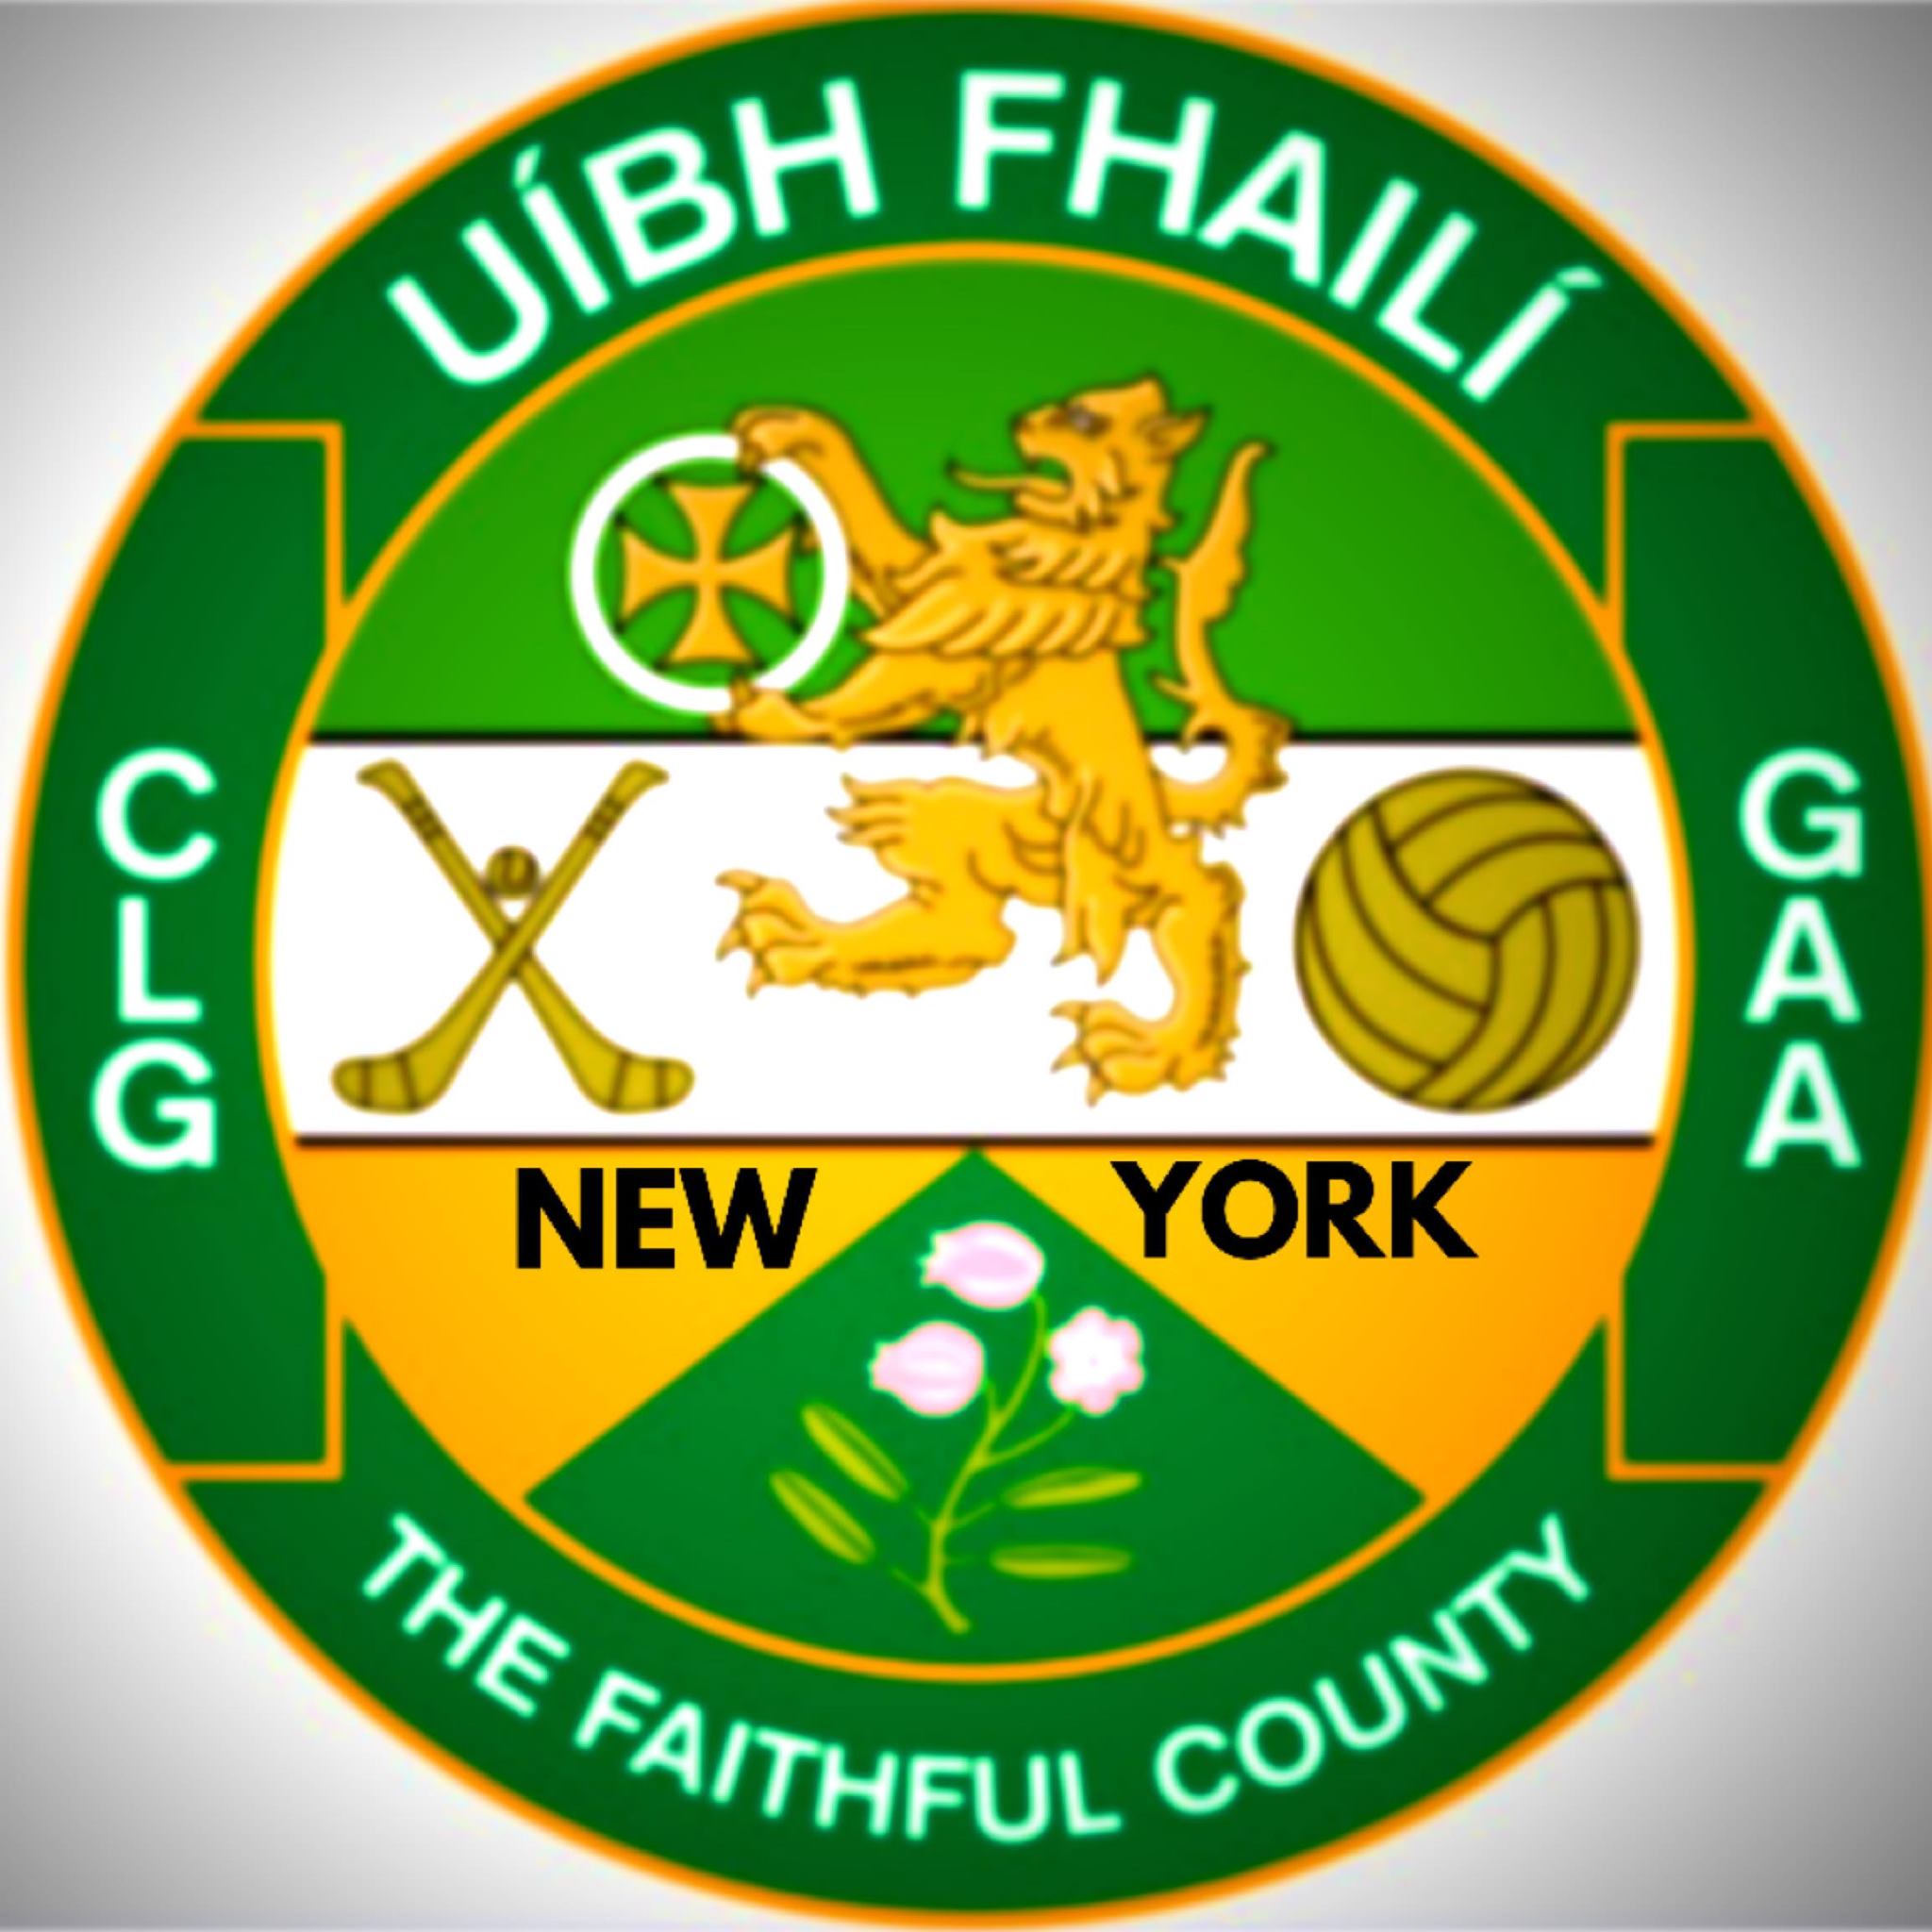 Offaly GAA Club New York